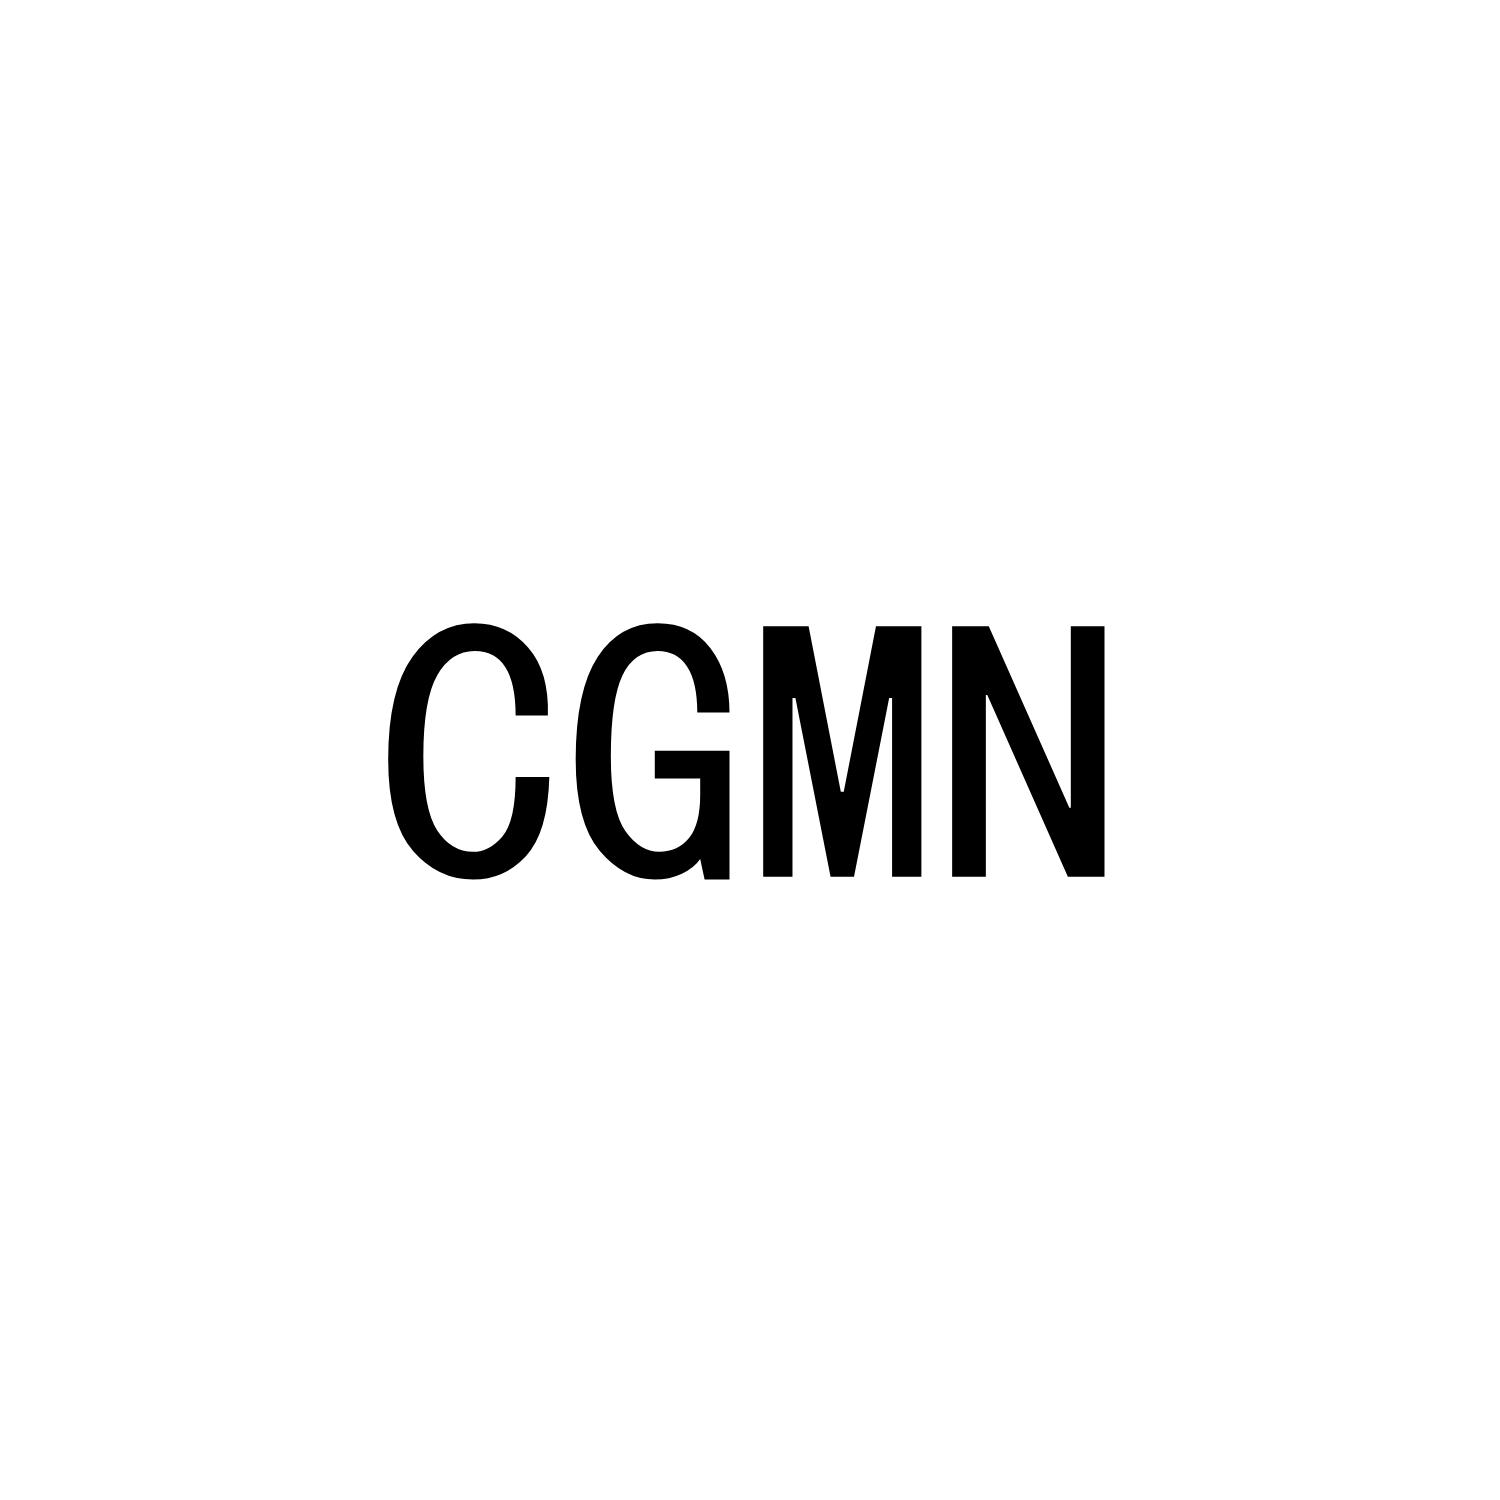 CGMN